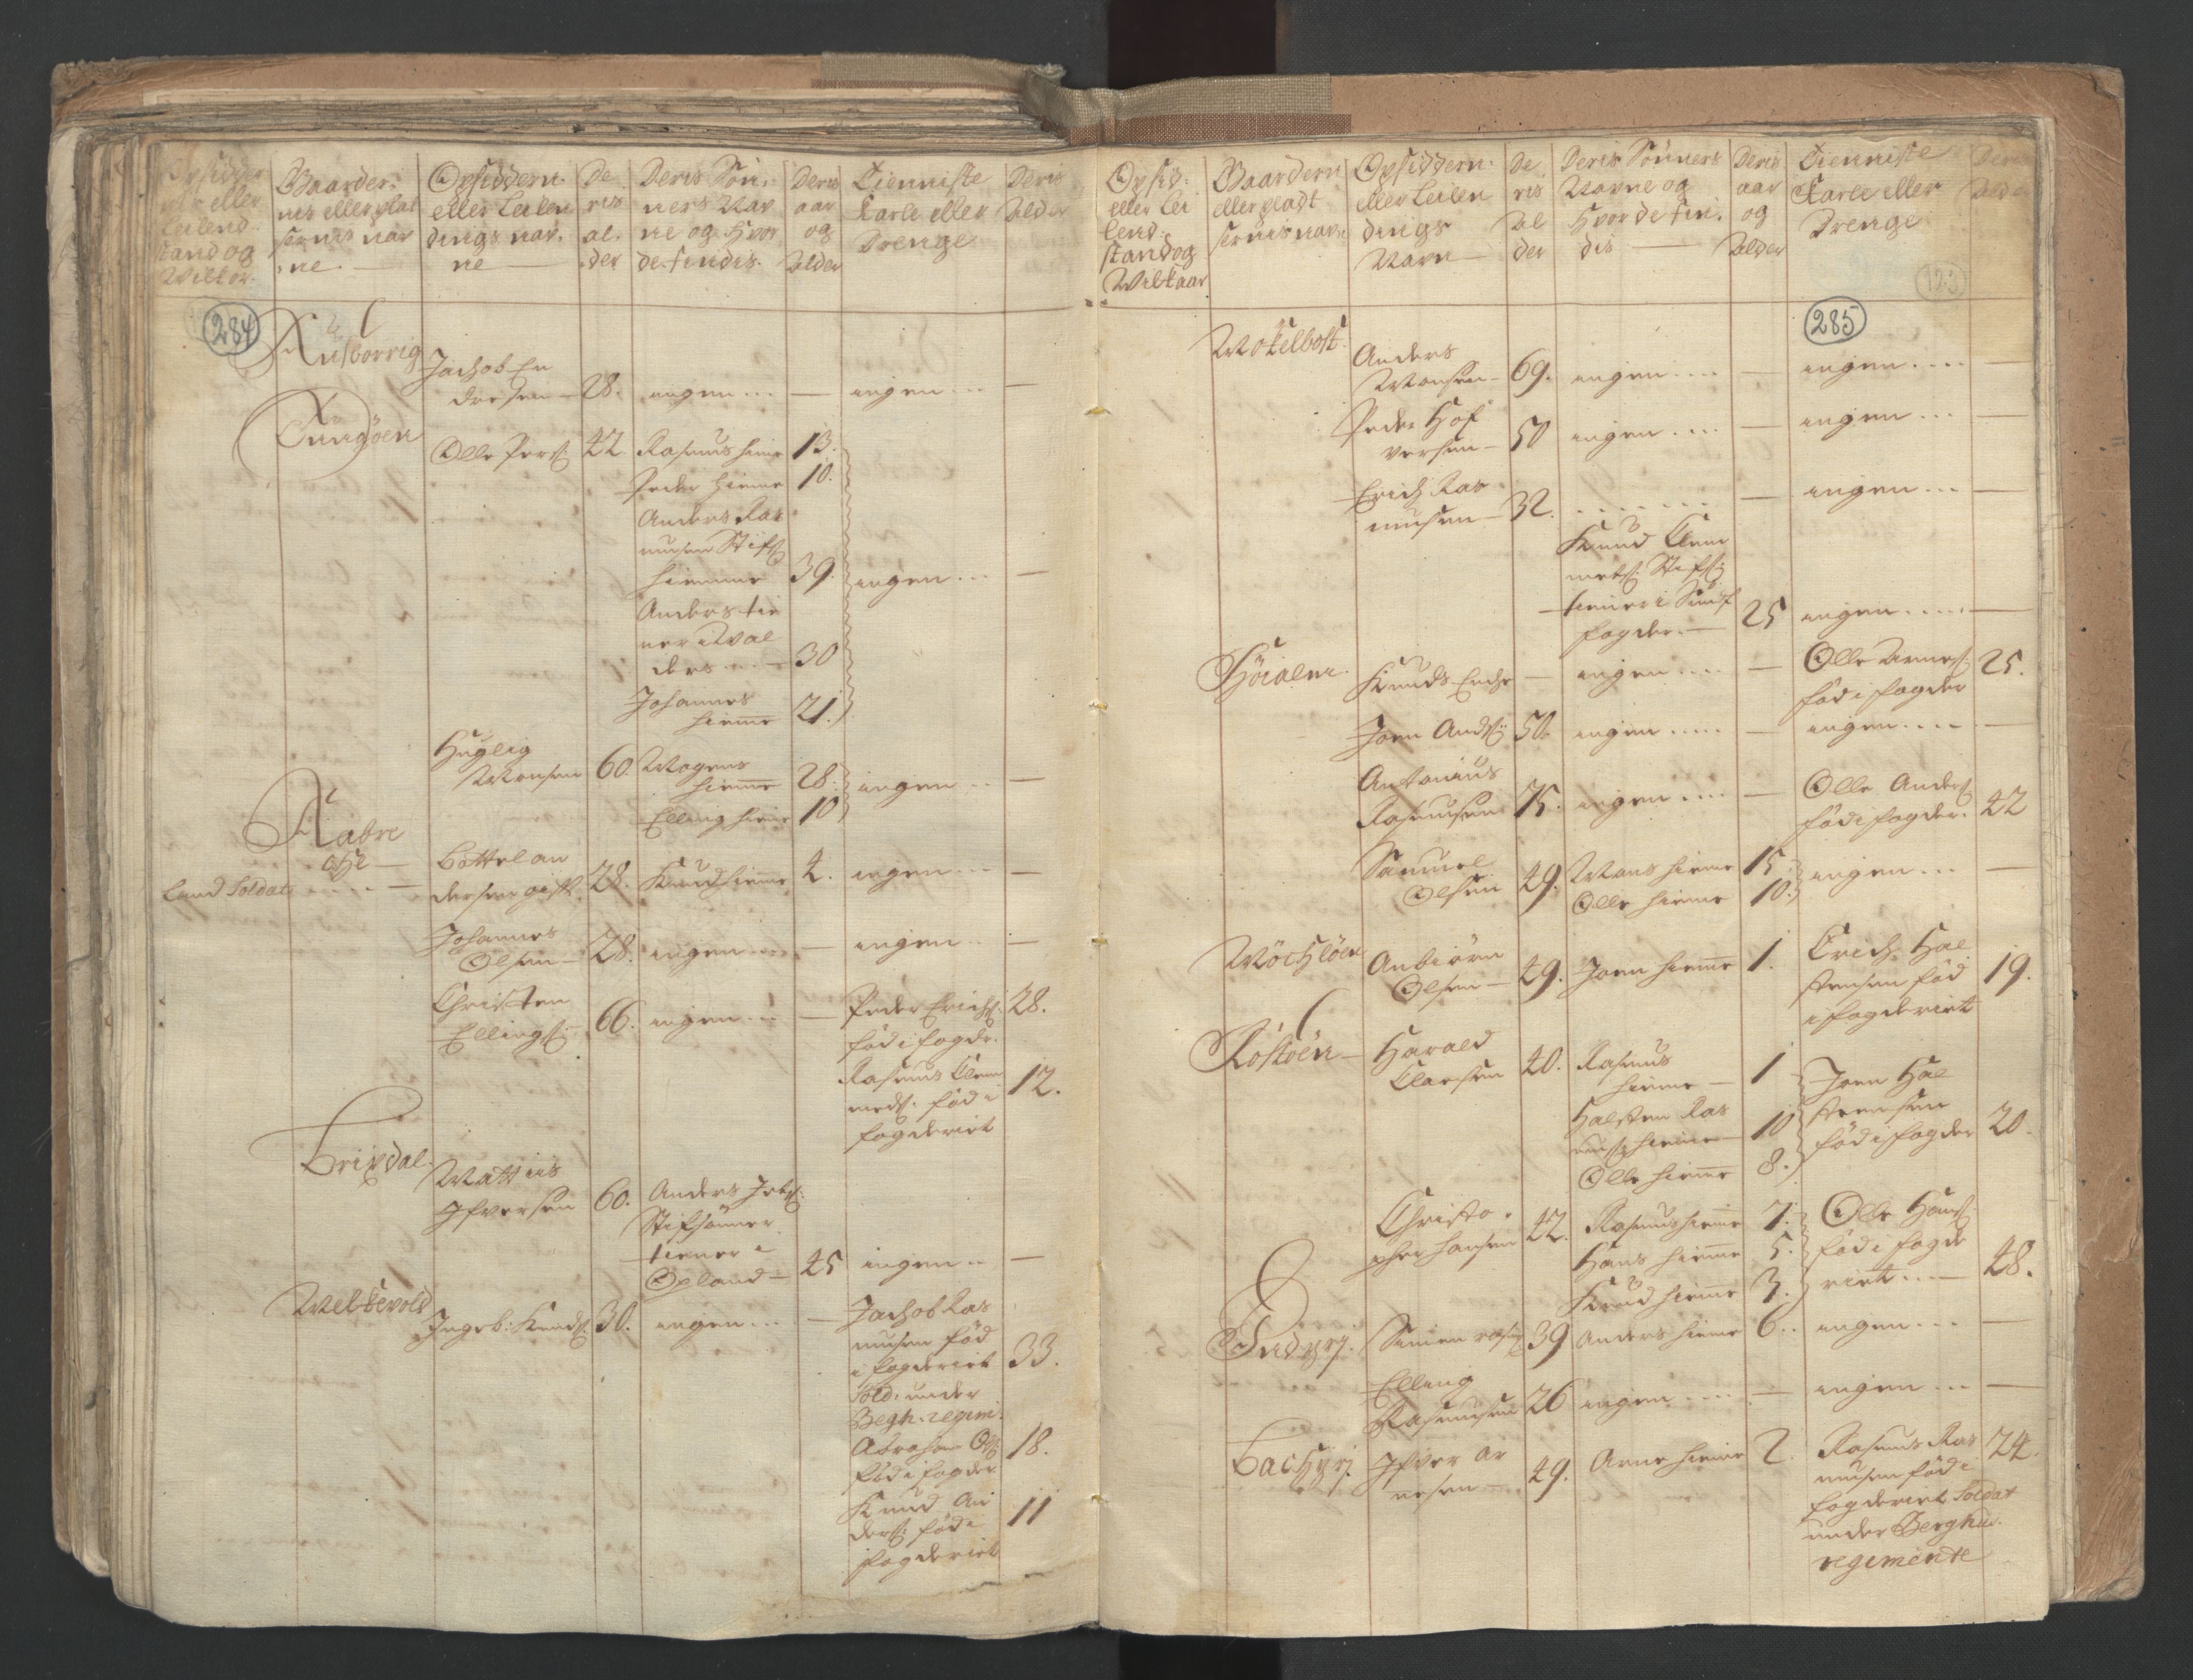 RA, Census (manntall) 1701, no. 9: Sunnfjord fogderi, Nordfjord fogderi and Svanø birk, 1701, p. 284-285